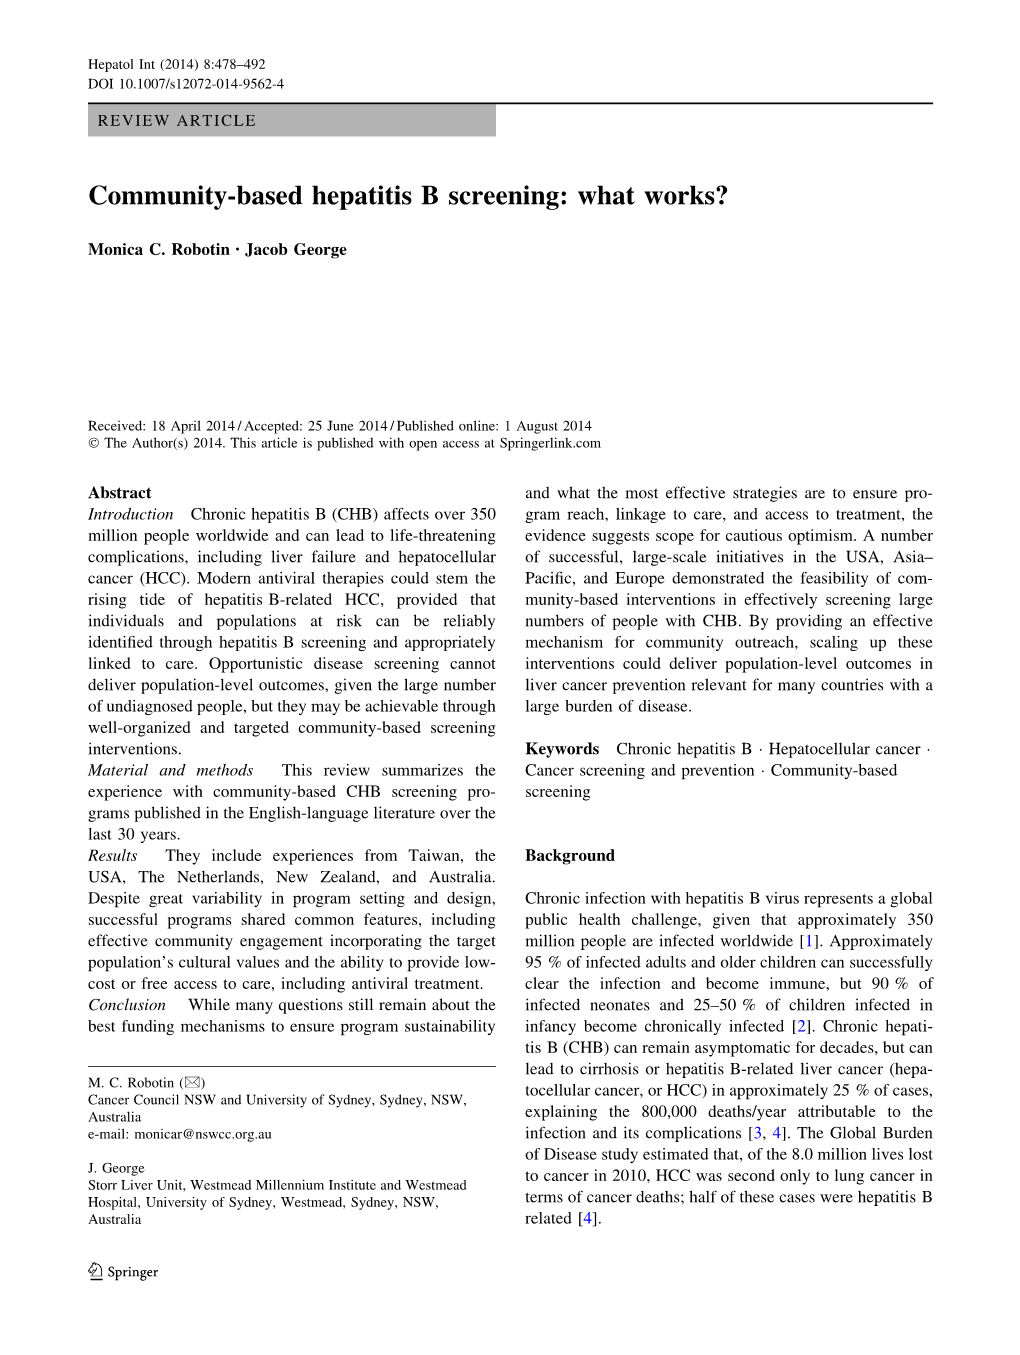 Community-Based Hepatitis B Screening: What Works?